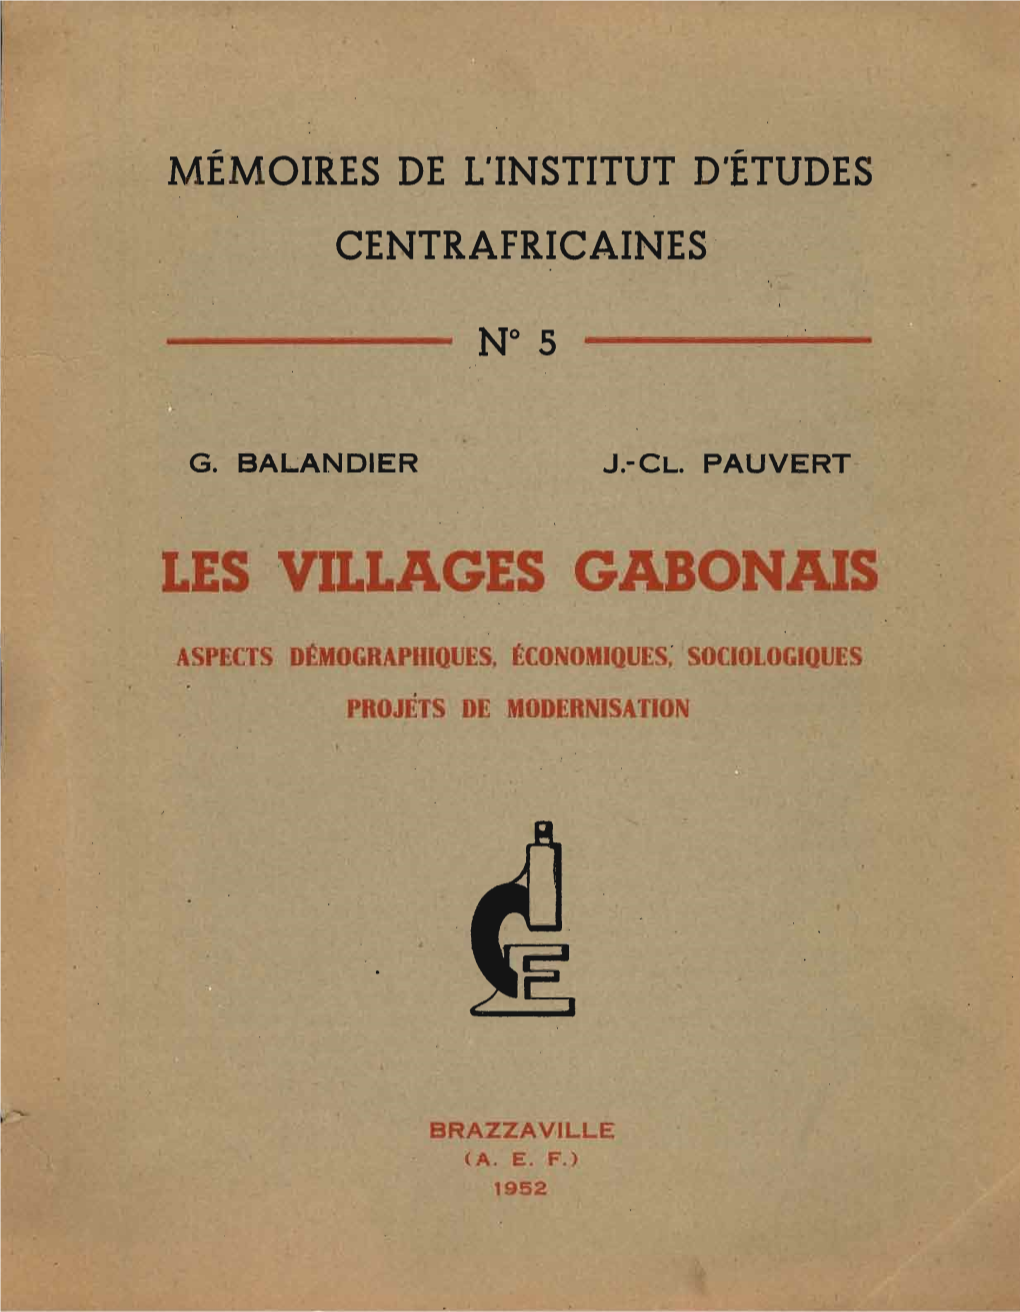 Les Villages Gabonais Memoires De L'institut D'etudes Centrafricaines Brazzaville (A.E.F.)